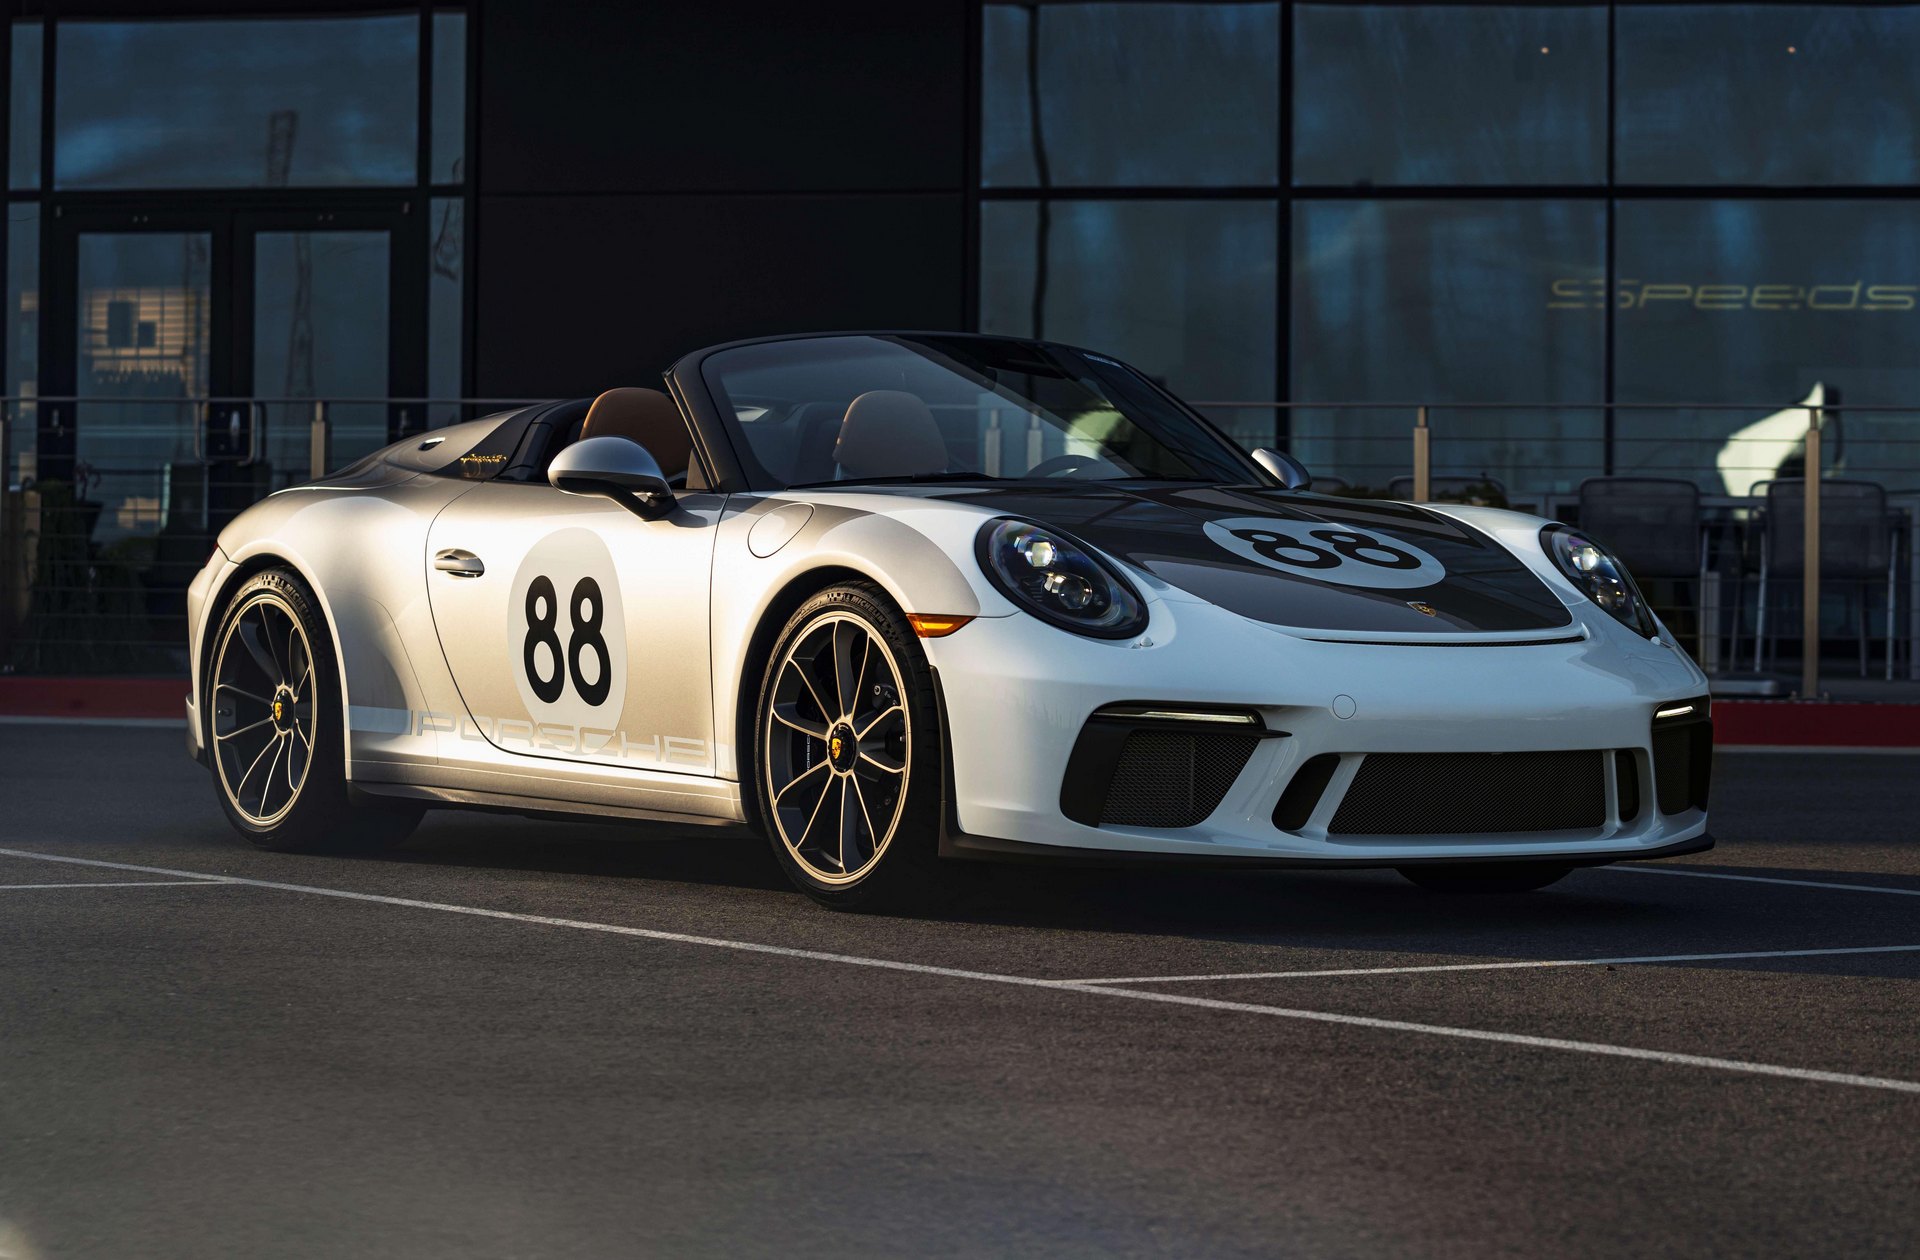 Σε δημοπρασία κατά του κορονοϊού, η τελευταία Porsche 911 Speedster